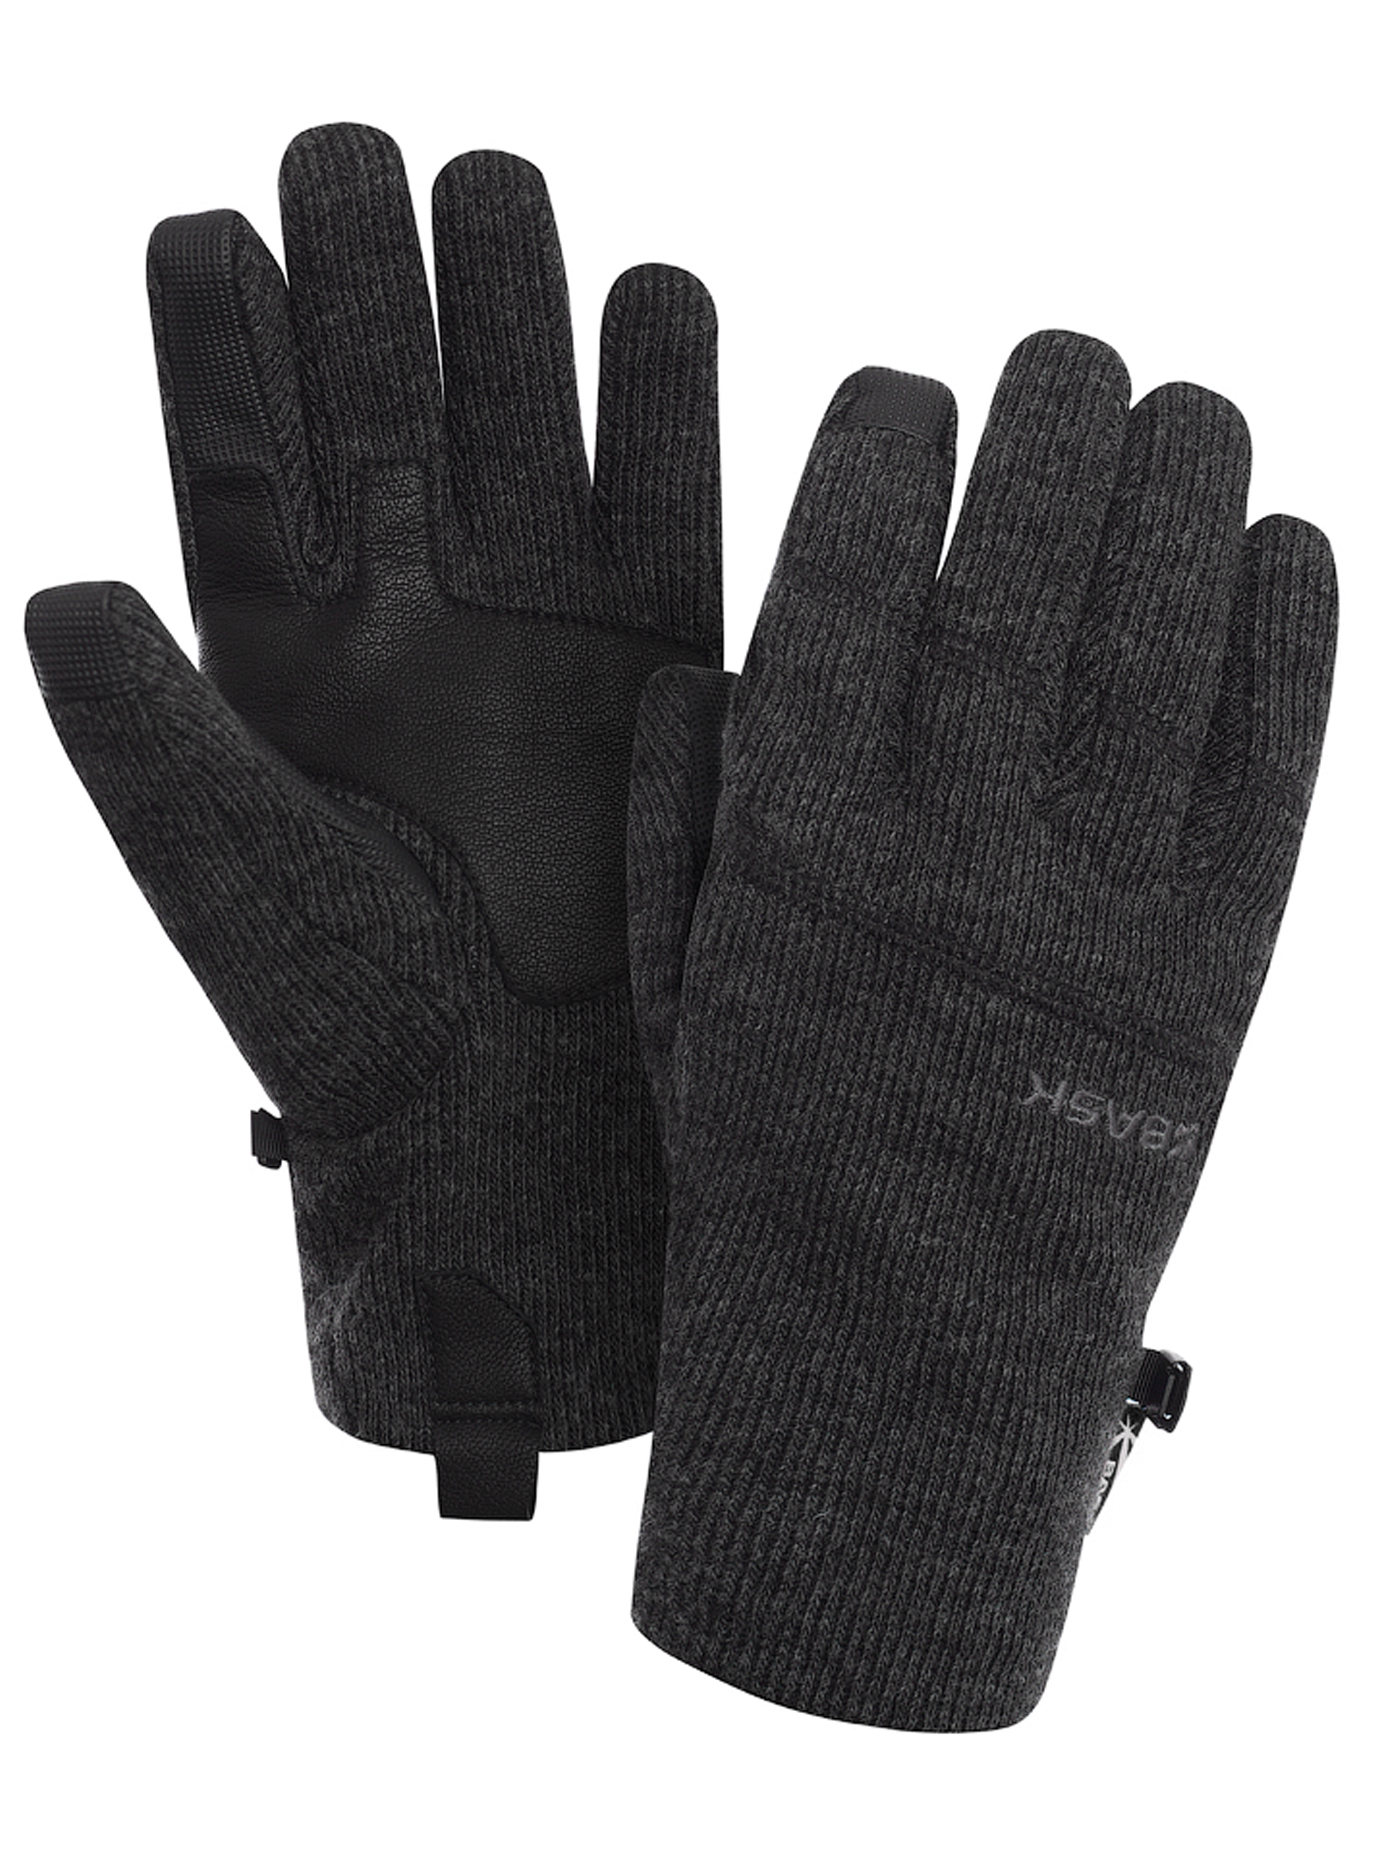 Купить перчатки l. Перчатки Bask. Перчатки Remington Gloves places. Перчатки DEXSHELL Ultra weather. 3m перчатки Soft Touch.